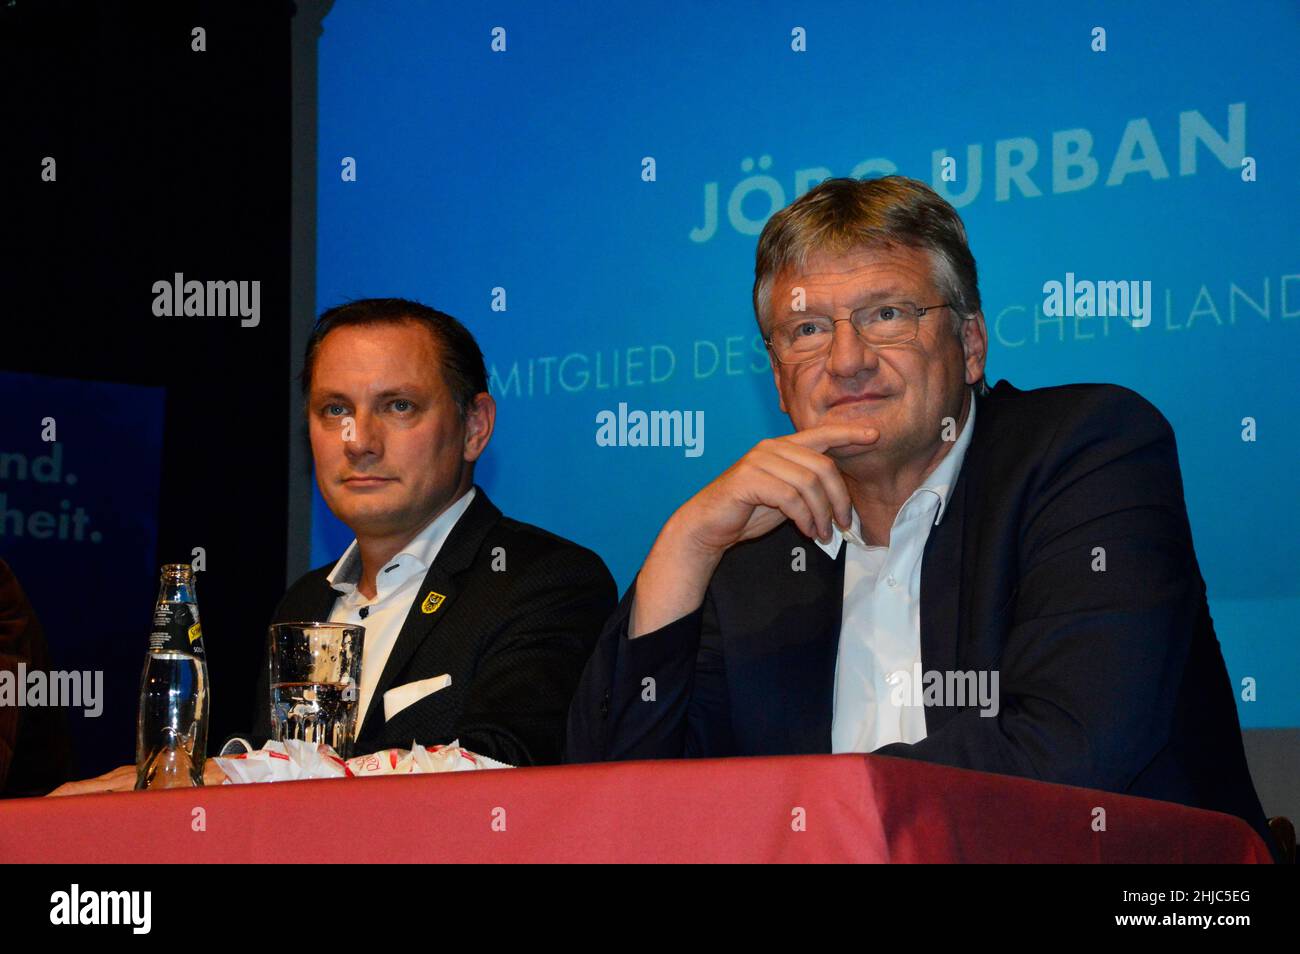 AFD-Parteichef Jörg Meuthen ist am 28.01.2022 aus der AFD ausgetreten und hat damit auch seinen Parteivorsitz mit sofortiger Wirkung niedergelegt. Im Foto Stock